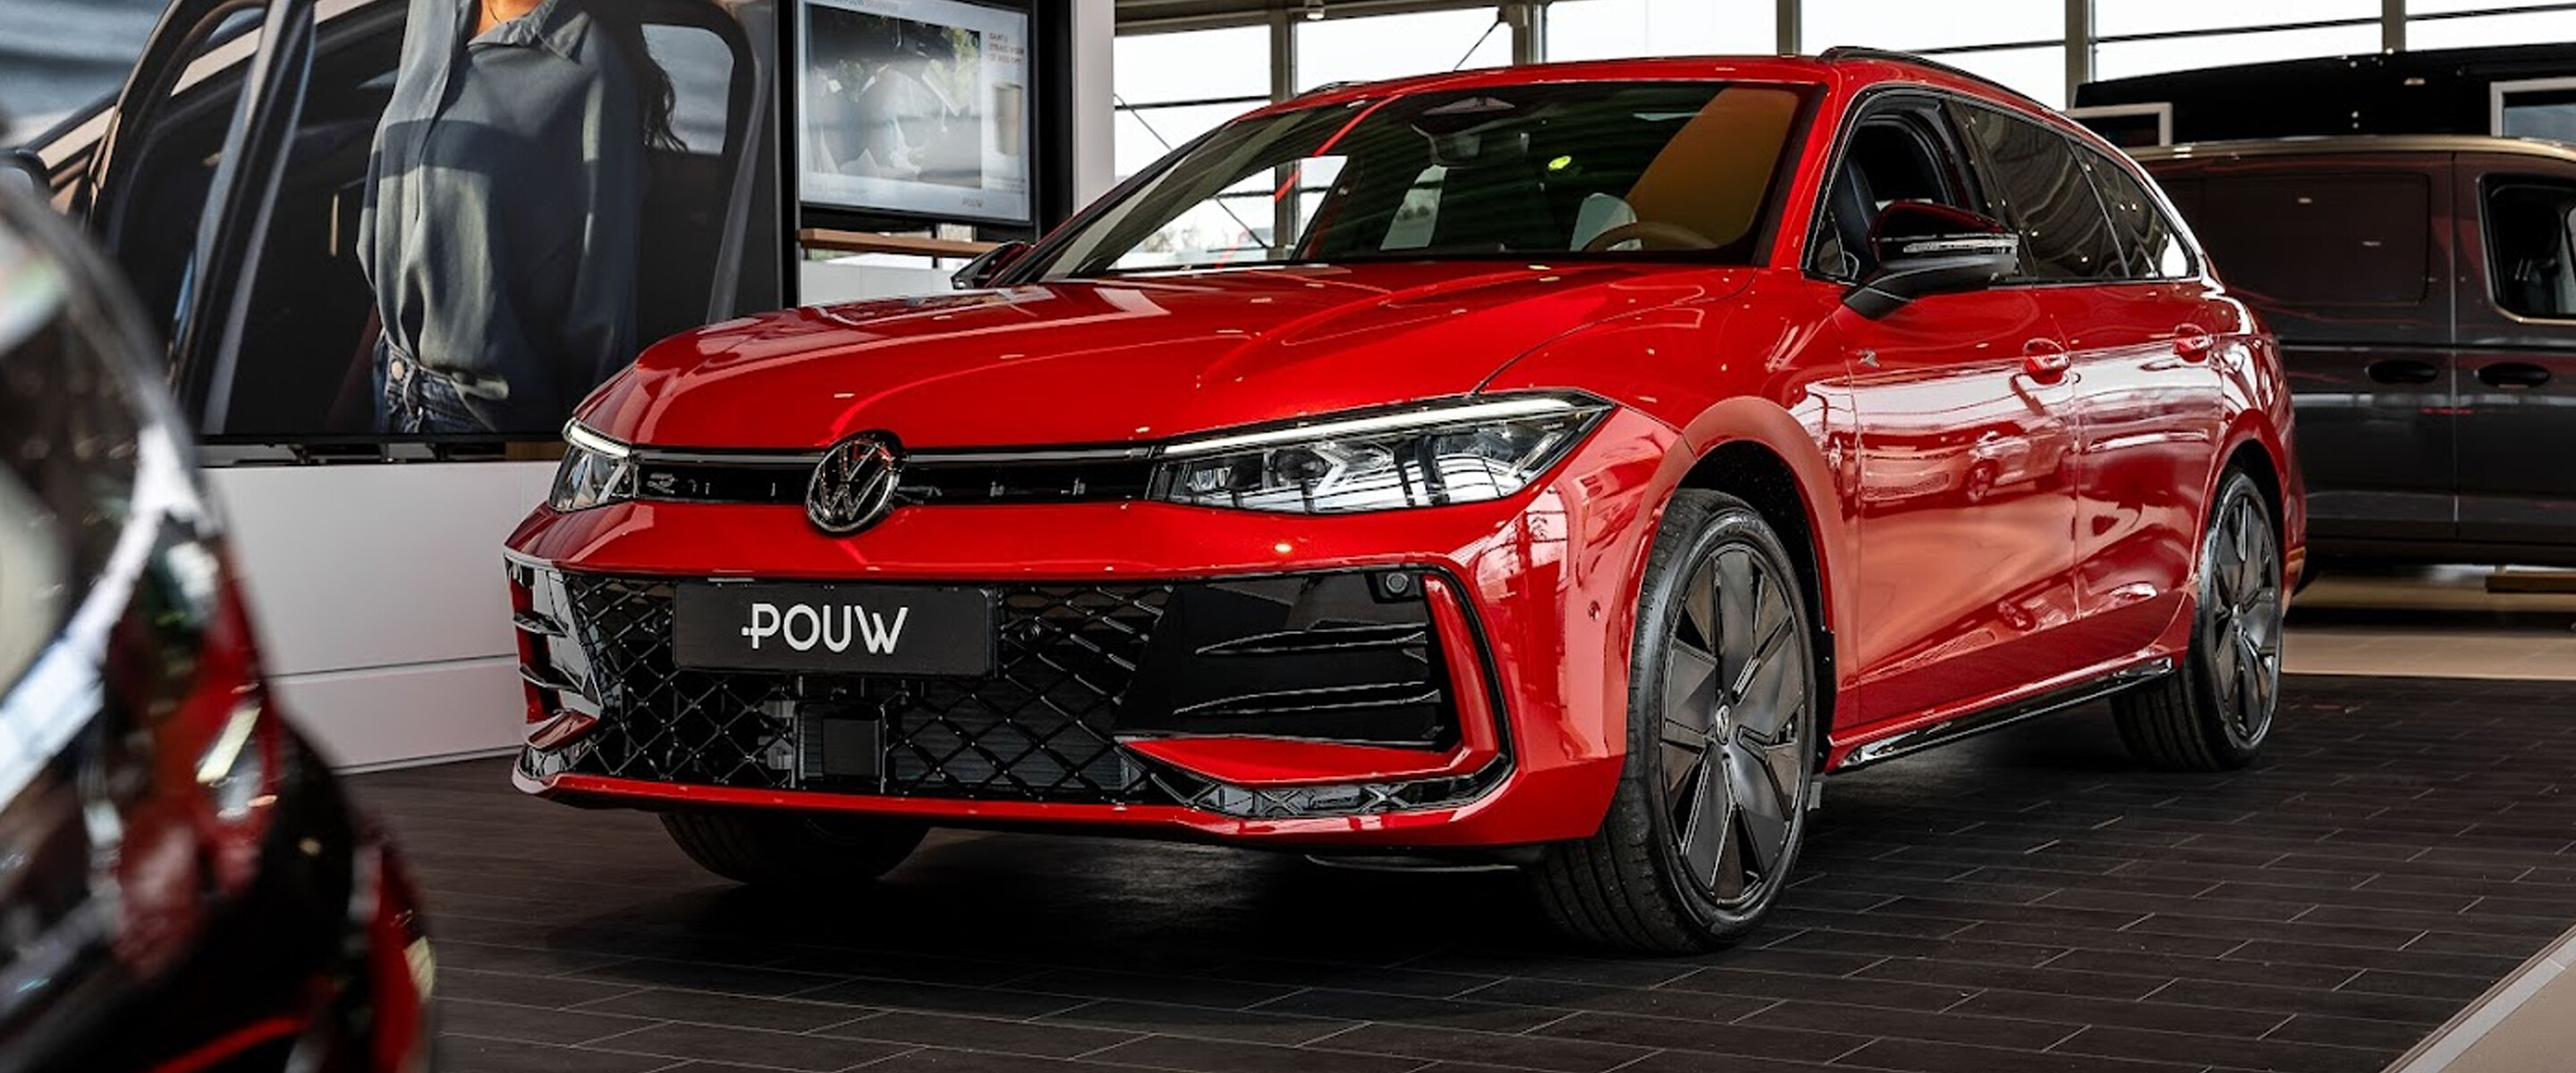 Volkswagen Passat bij Pouw in de Showroom